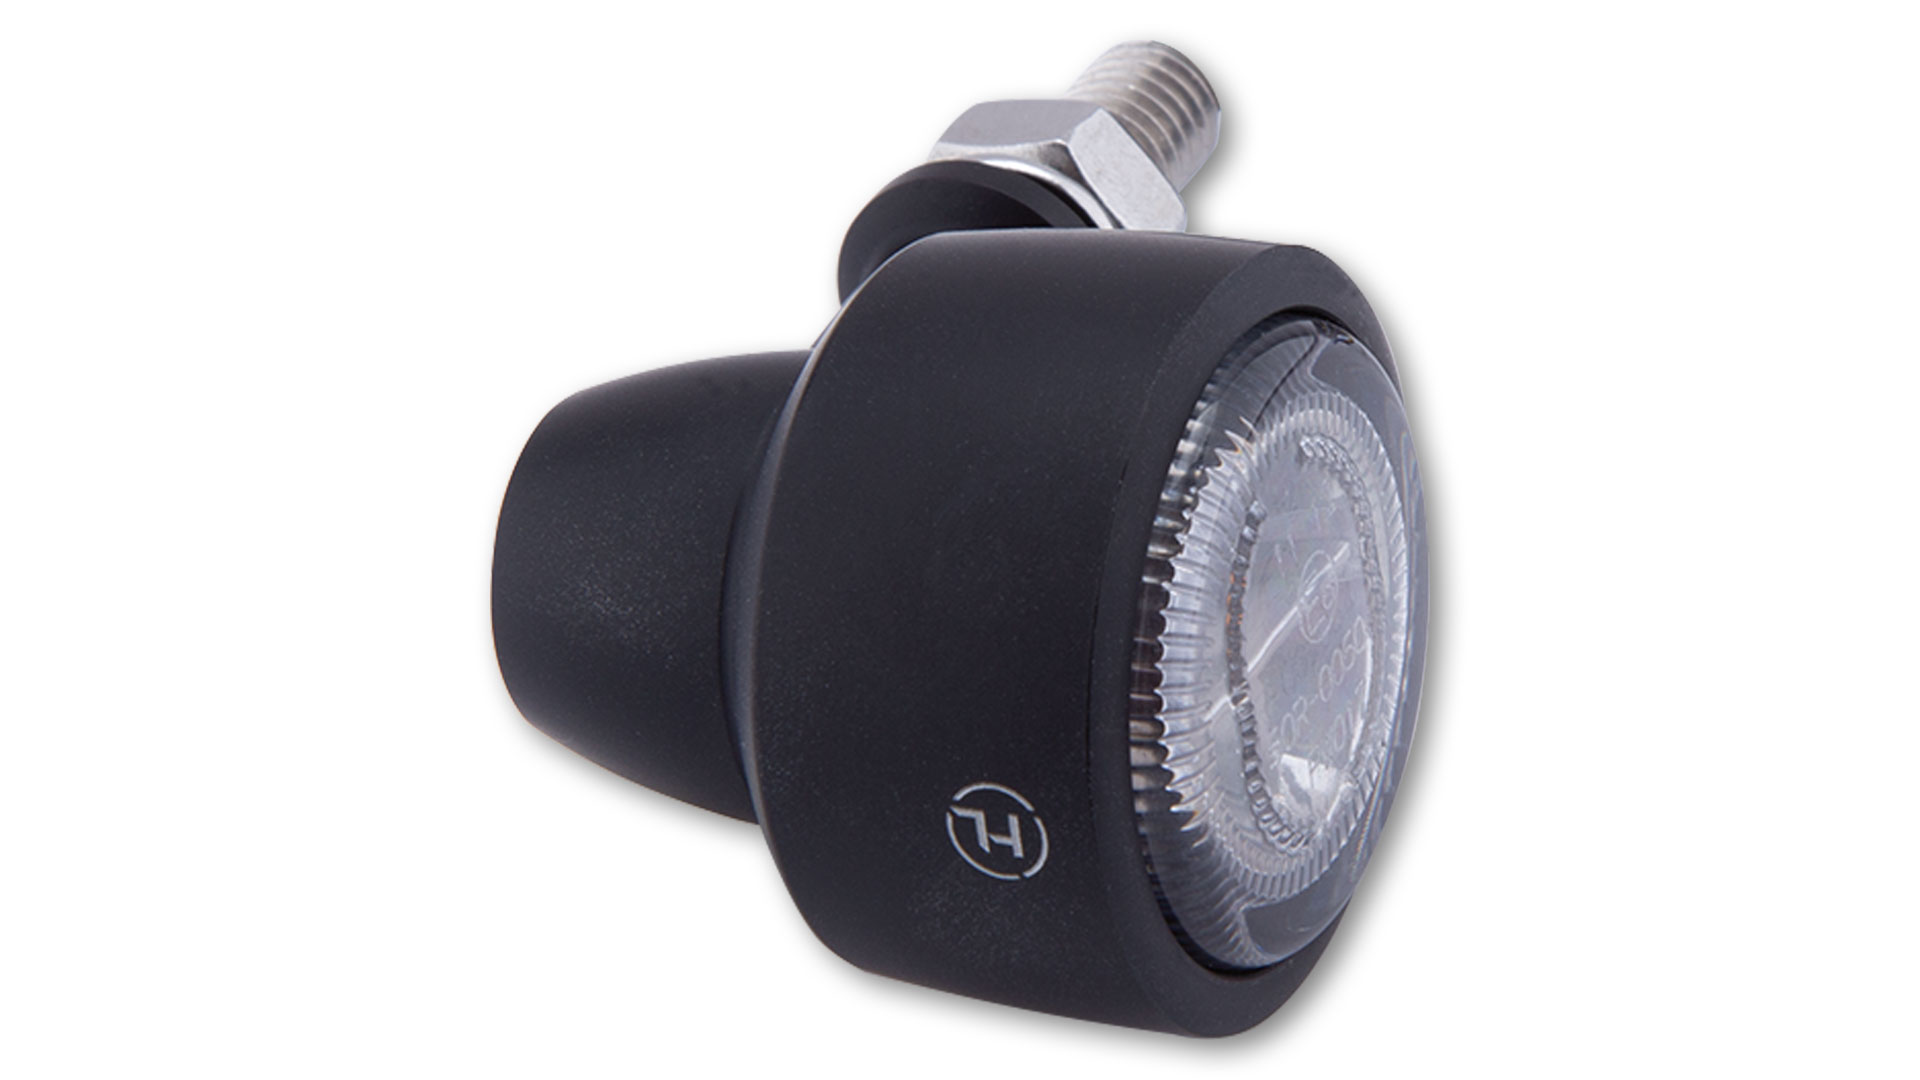 LED Rück-, Bremslicht, Blinker CLASSIC-X1, klassisch geformten Fahrtrichtungsanzeiger mit getöntem Reflektor, in Silber und in Schwarz seidenmatt eloxiert erhältlich, E-geprüft, Paar.